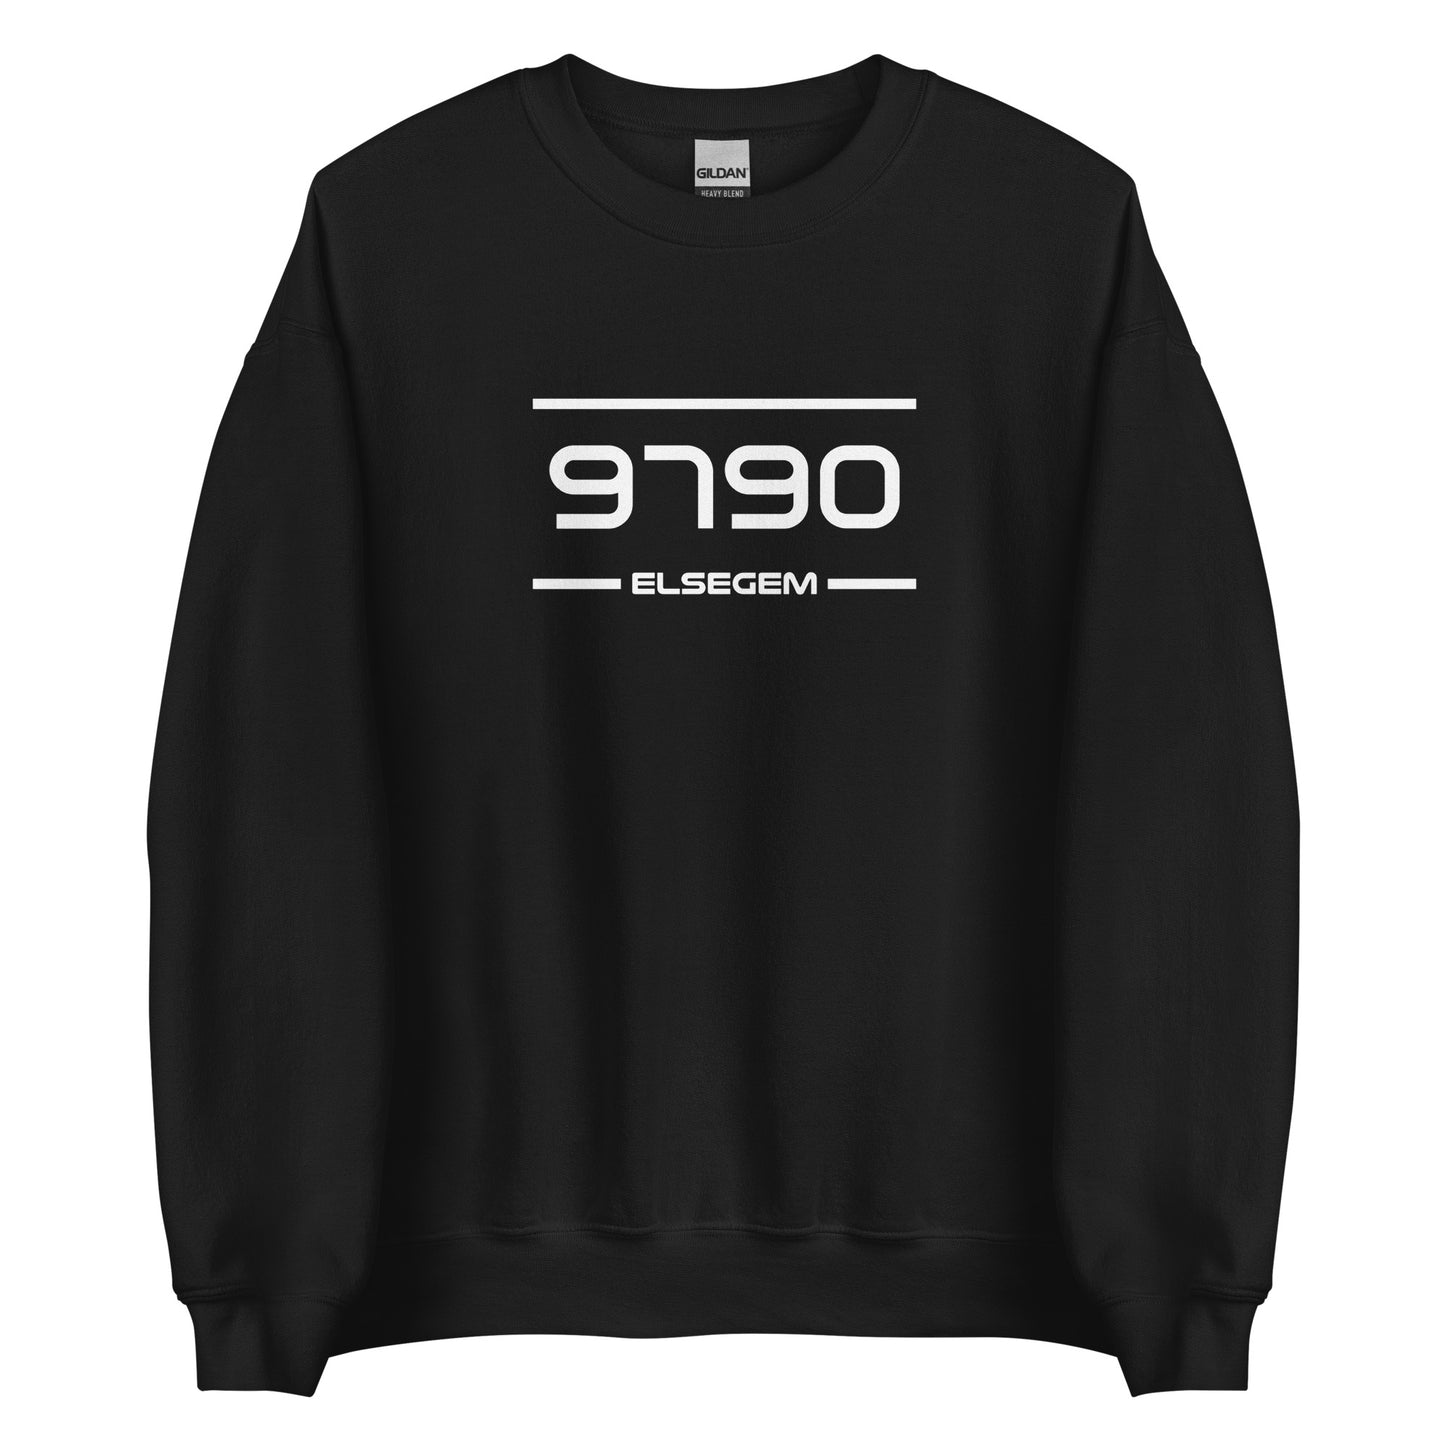 Sweater - 9790 - Elsegem (M/V)